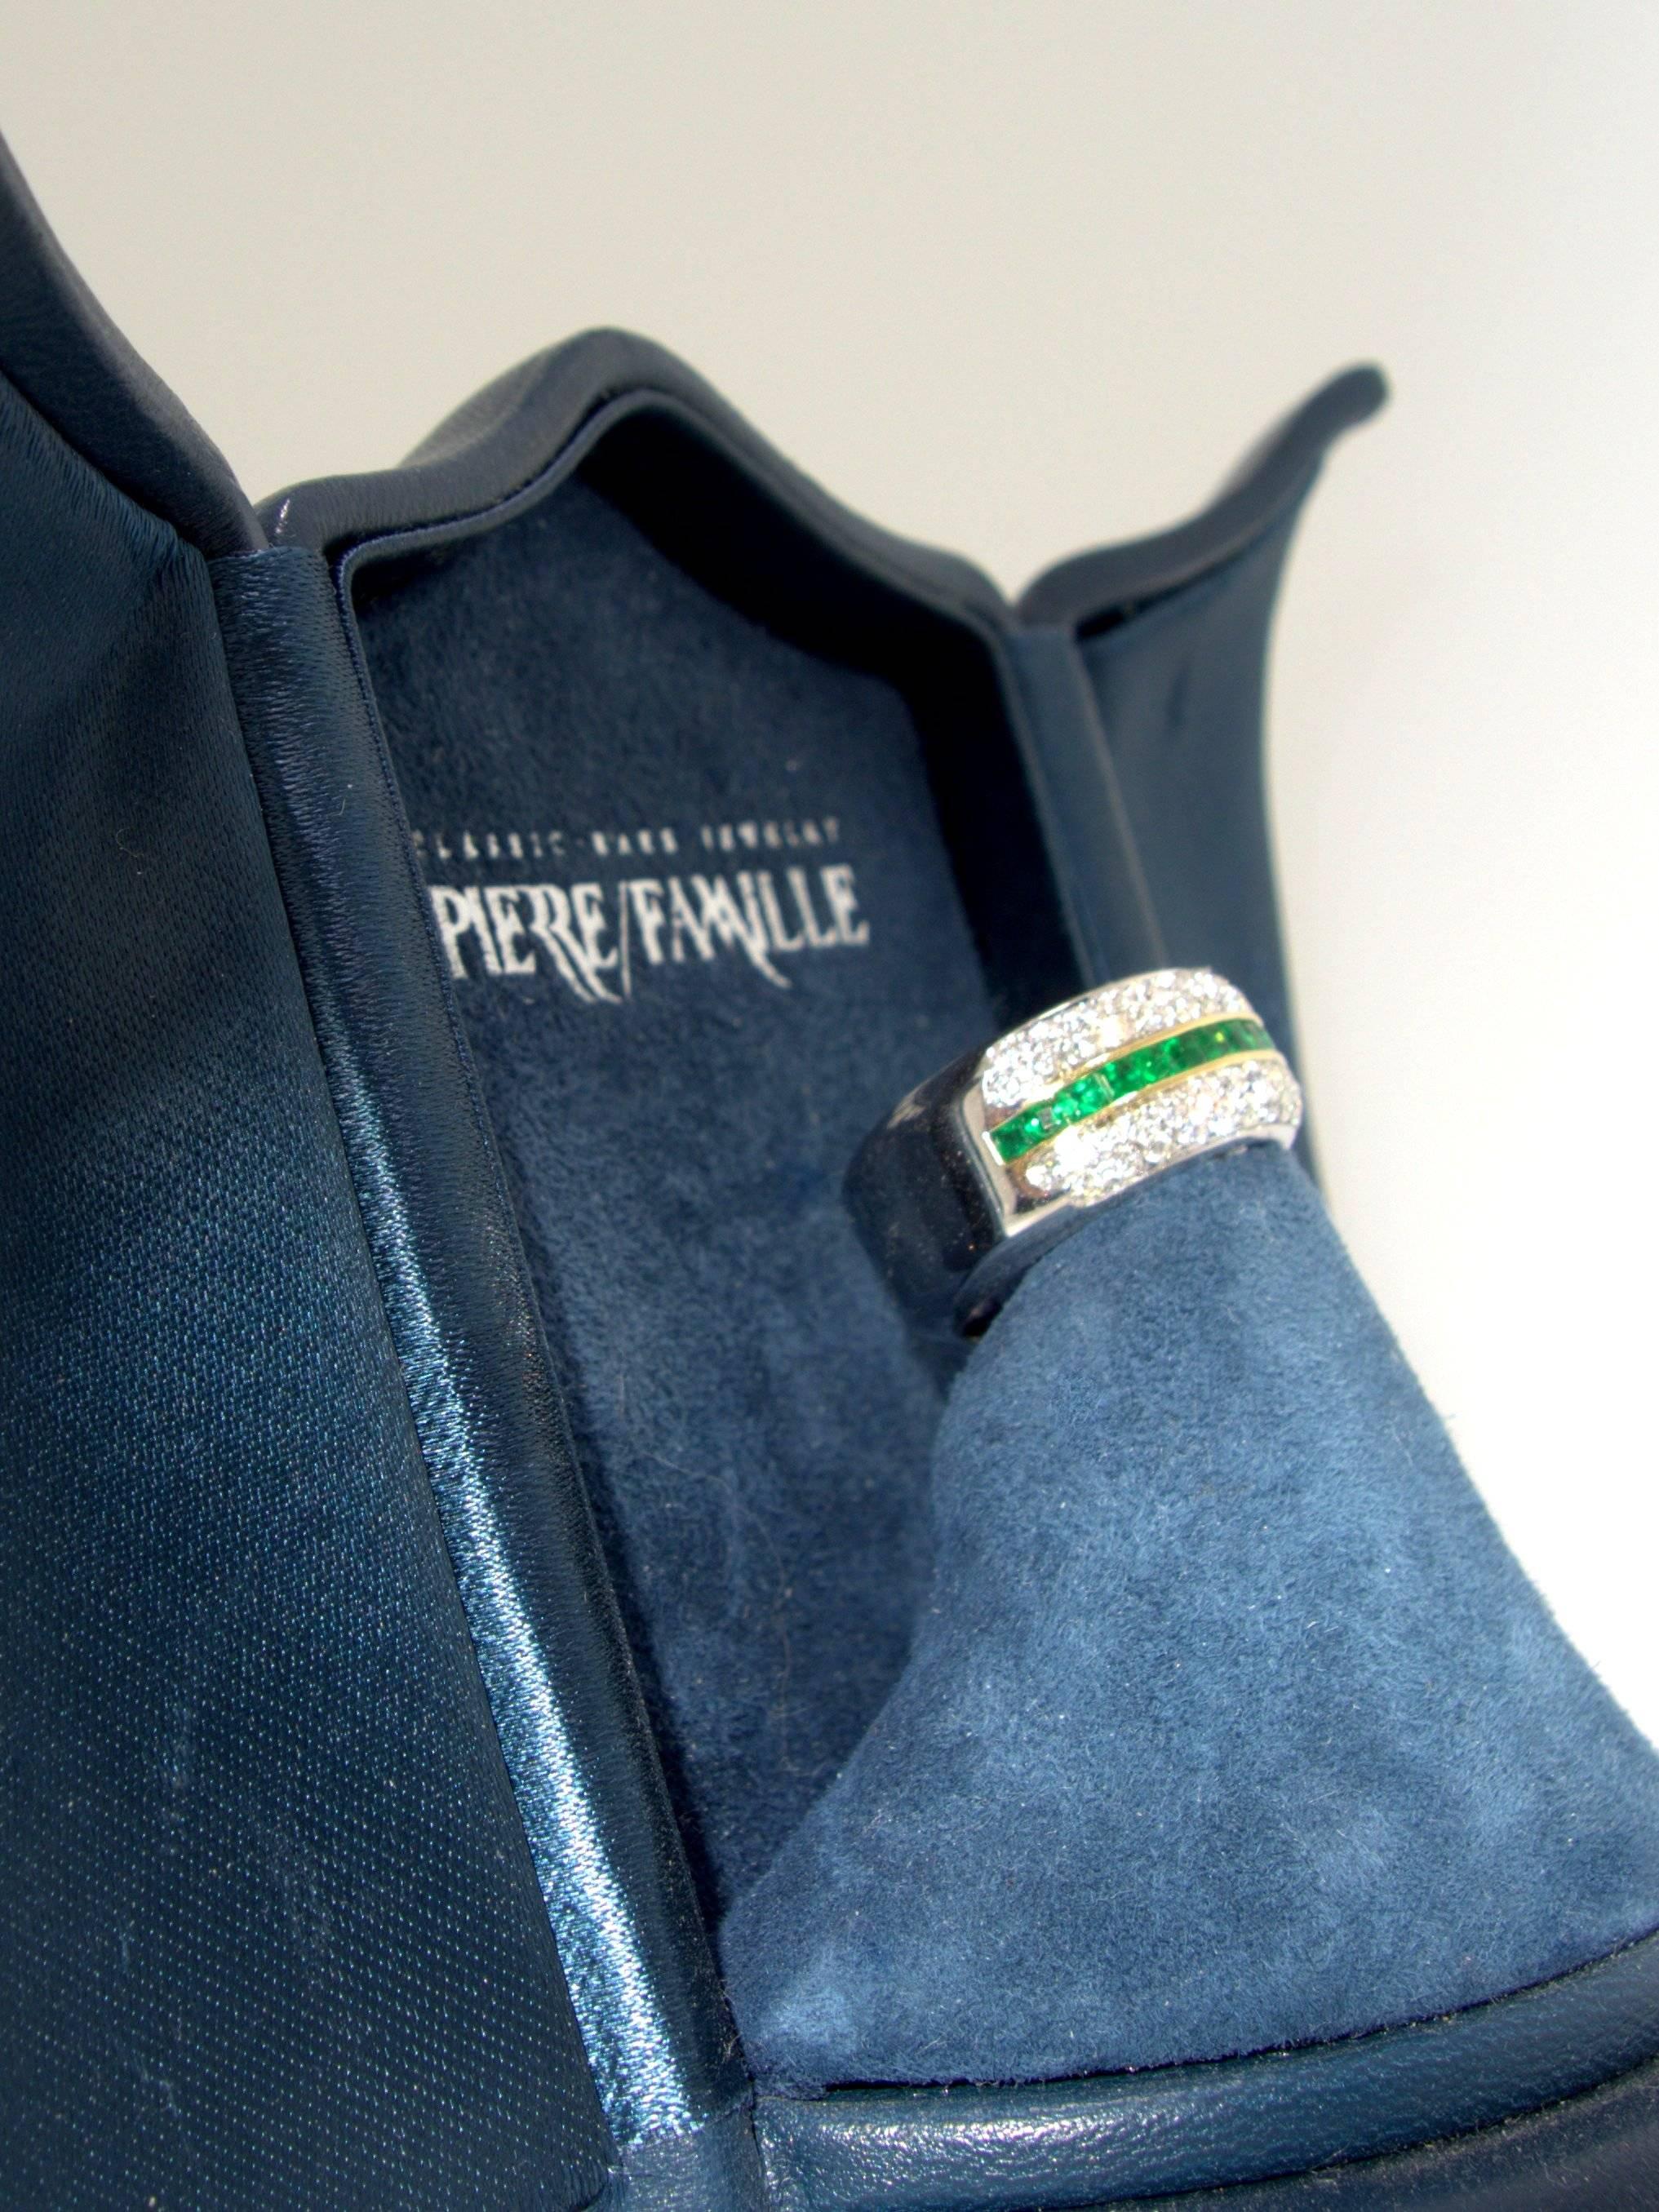 Contemporary Fine Emerald and Diamond Half Band Ring